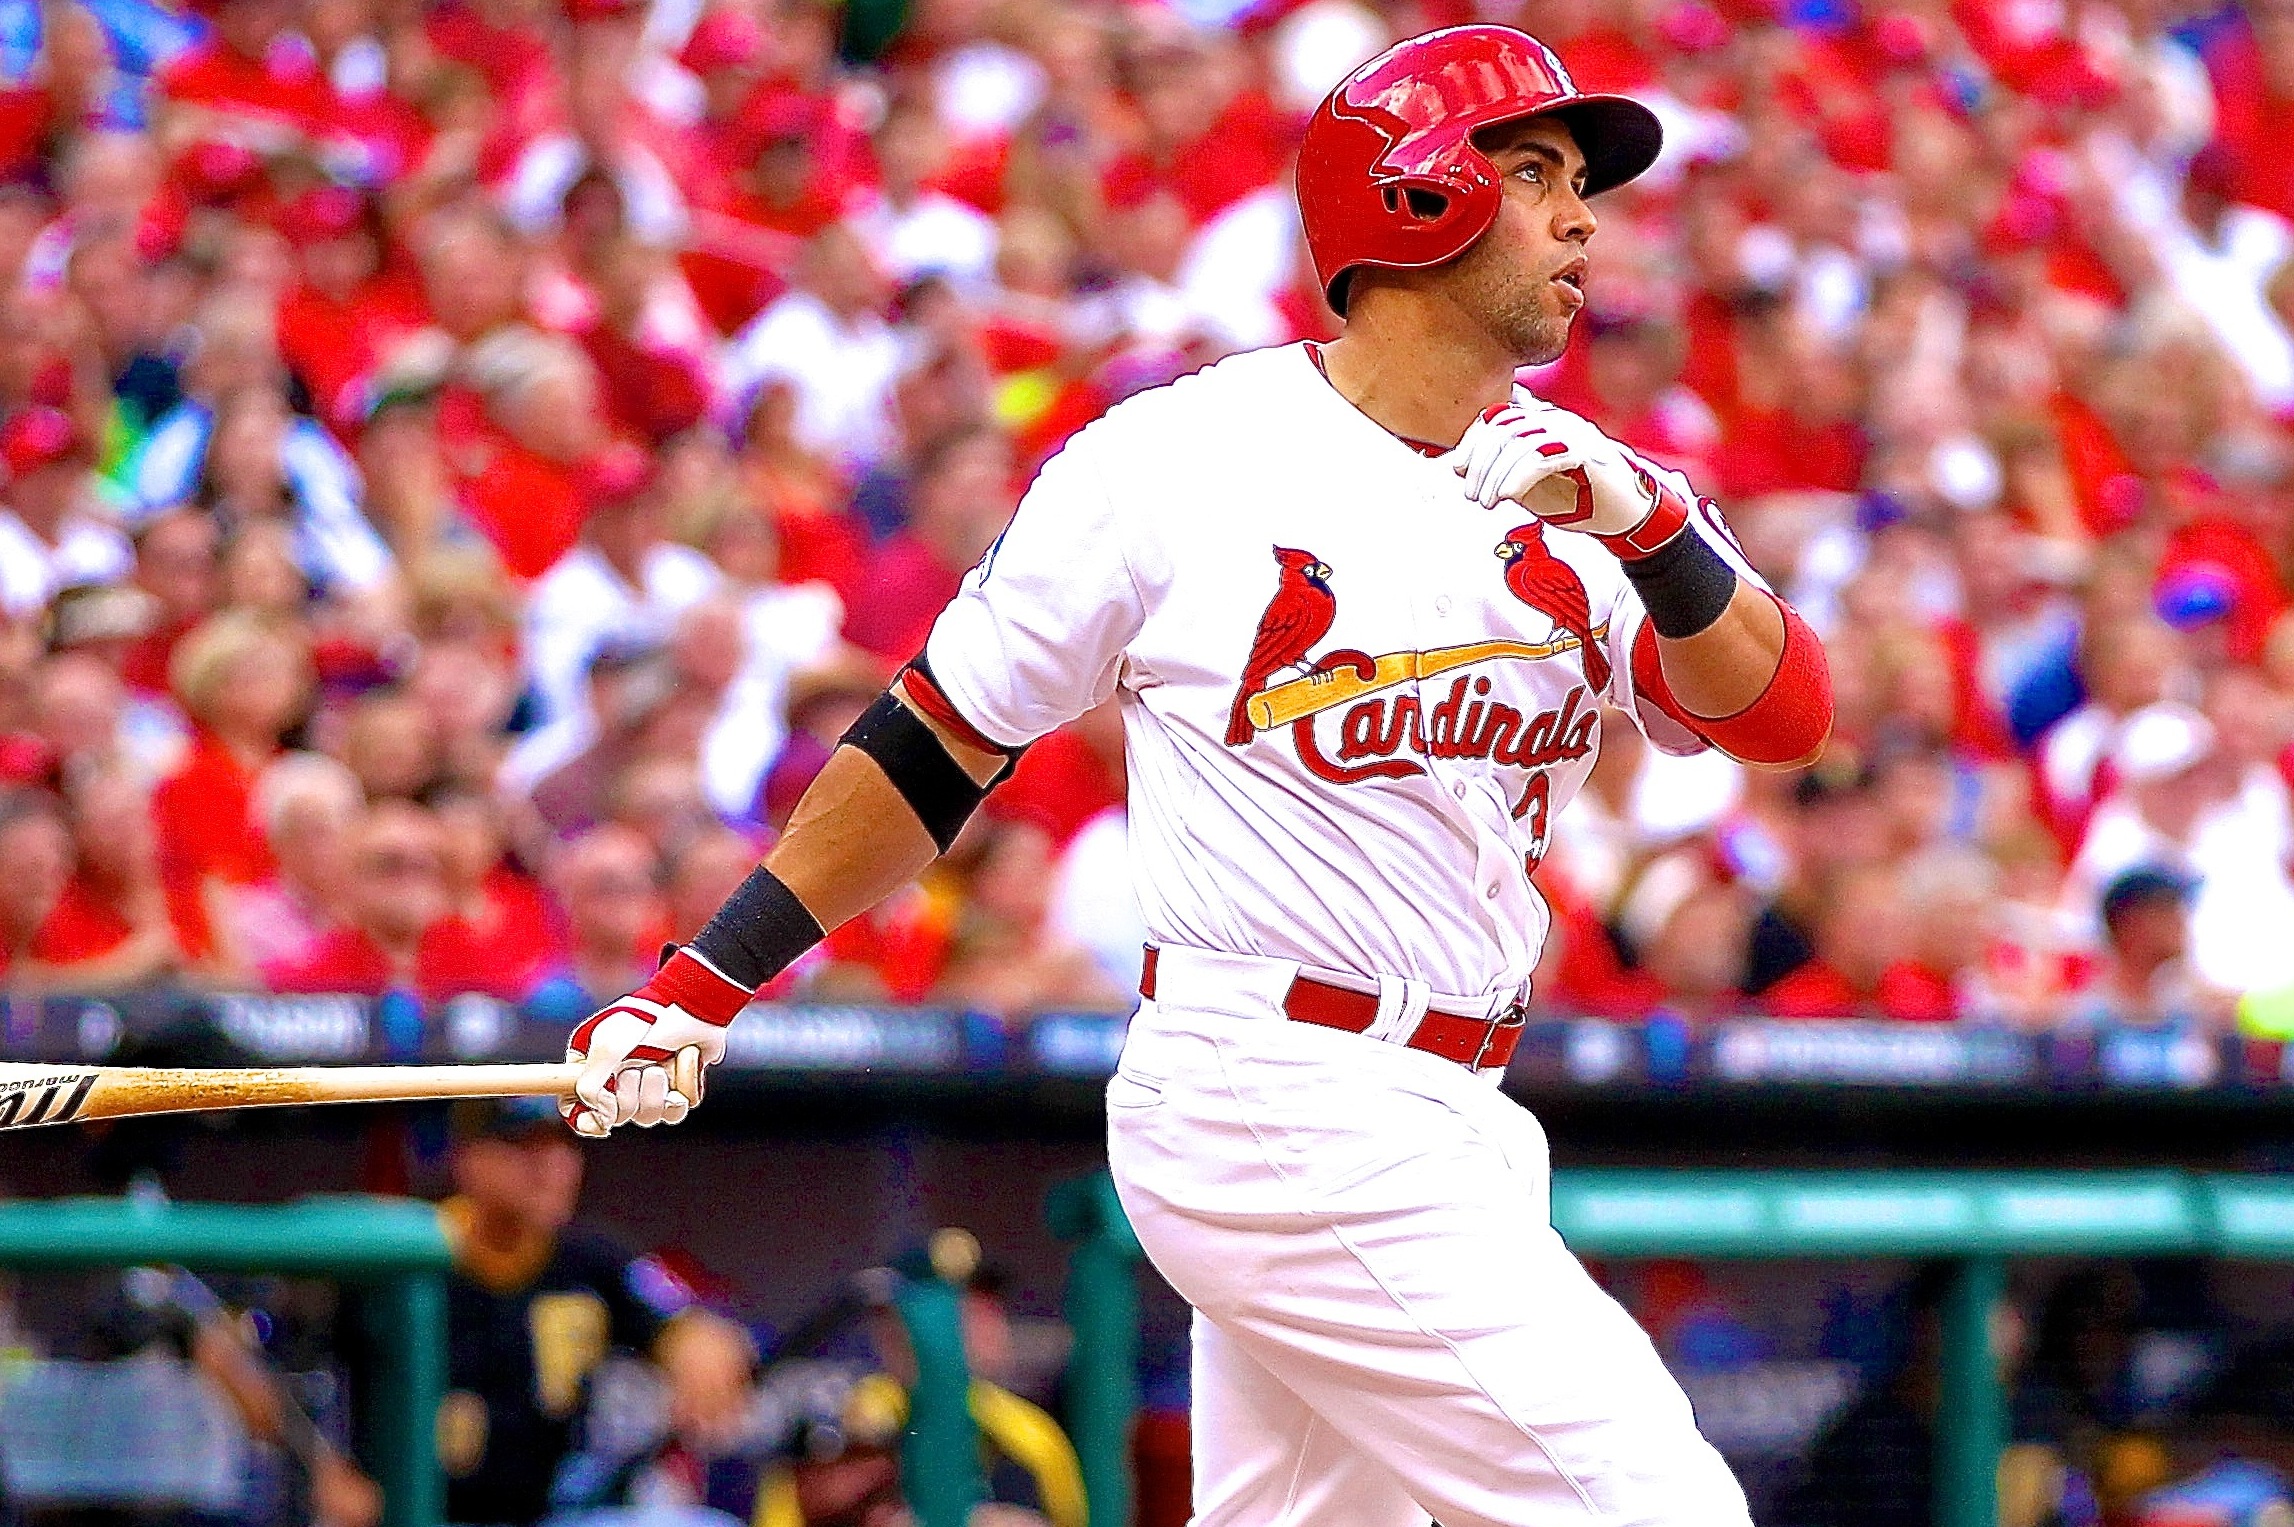  2013 Panini Pinnacle #140 Carlos Beltran Cardinals MLB